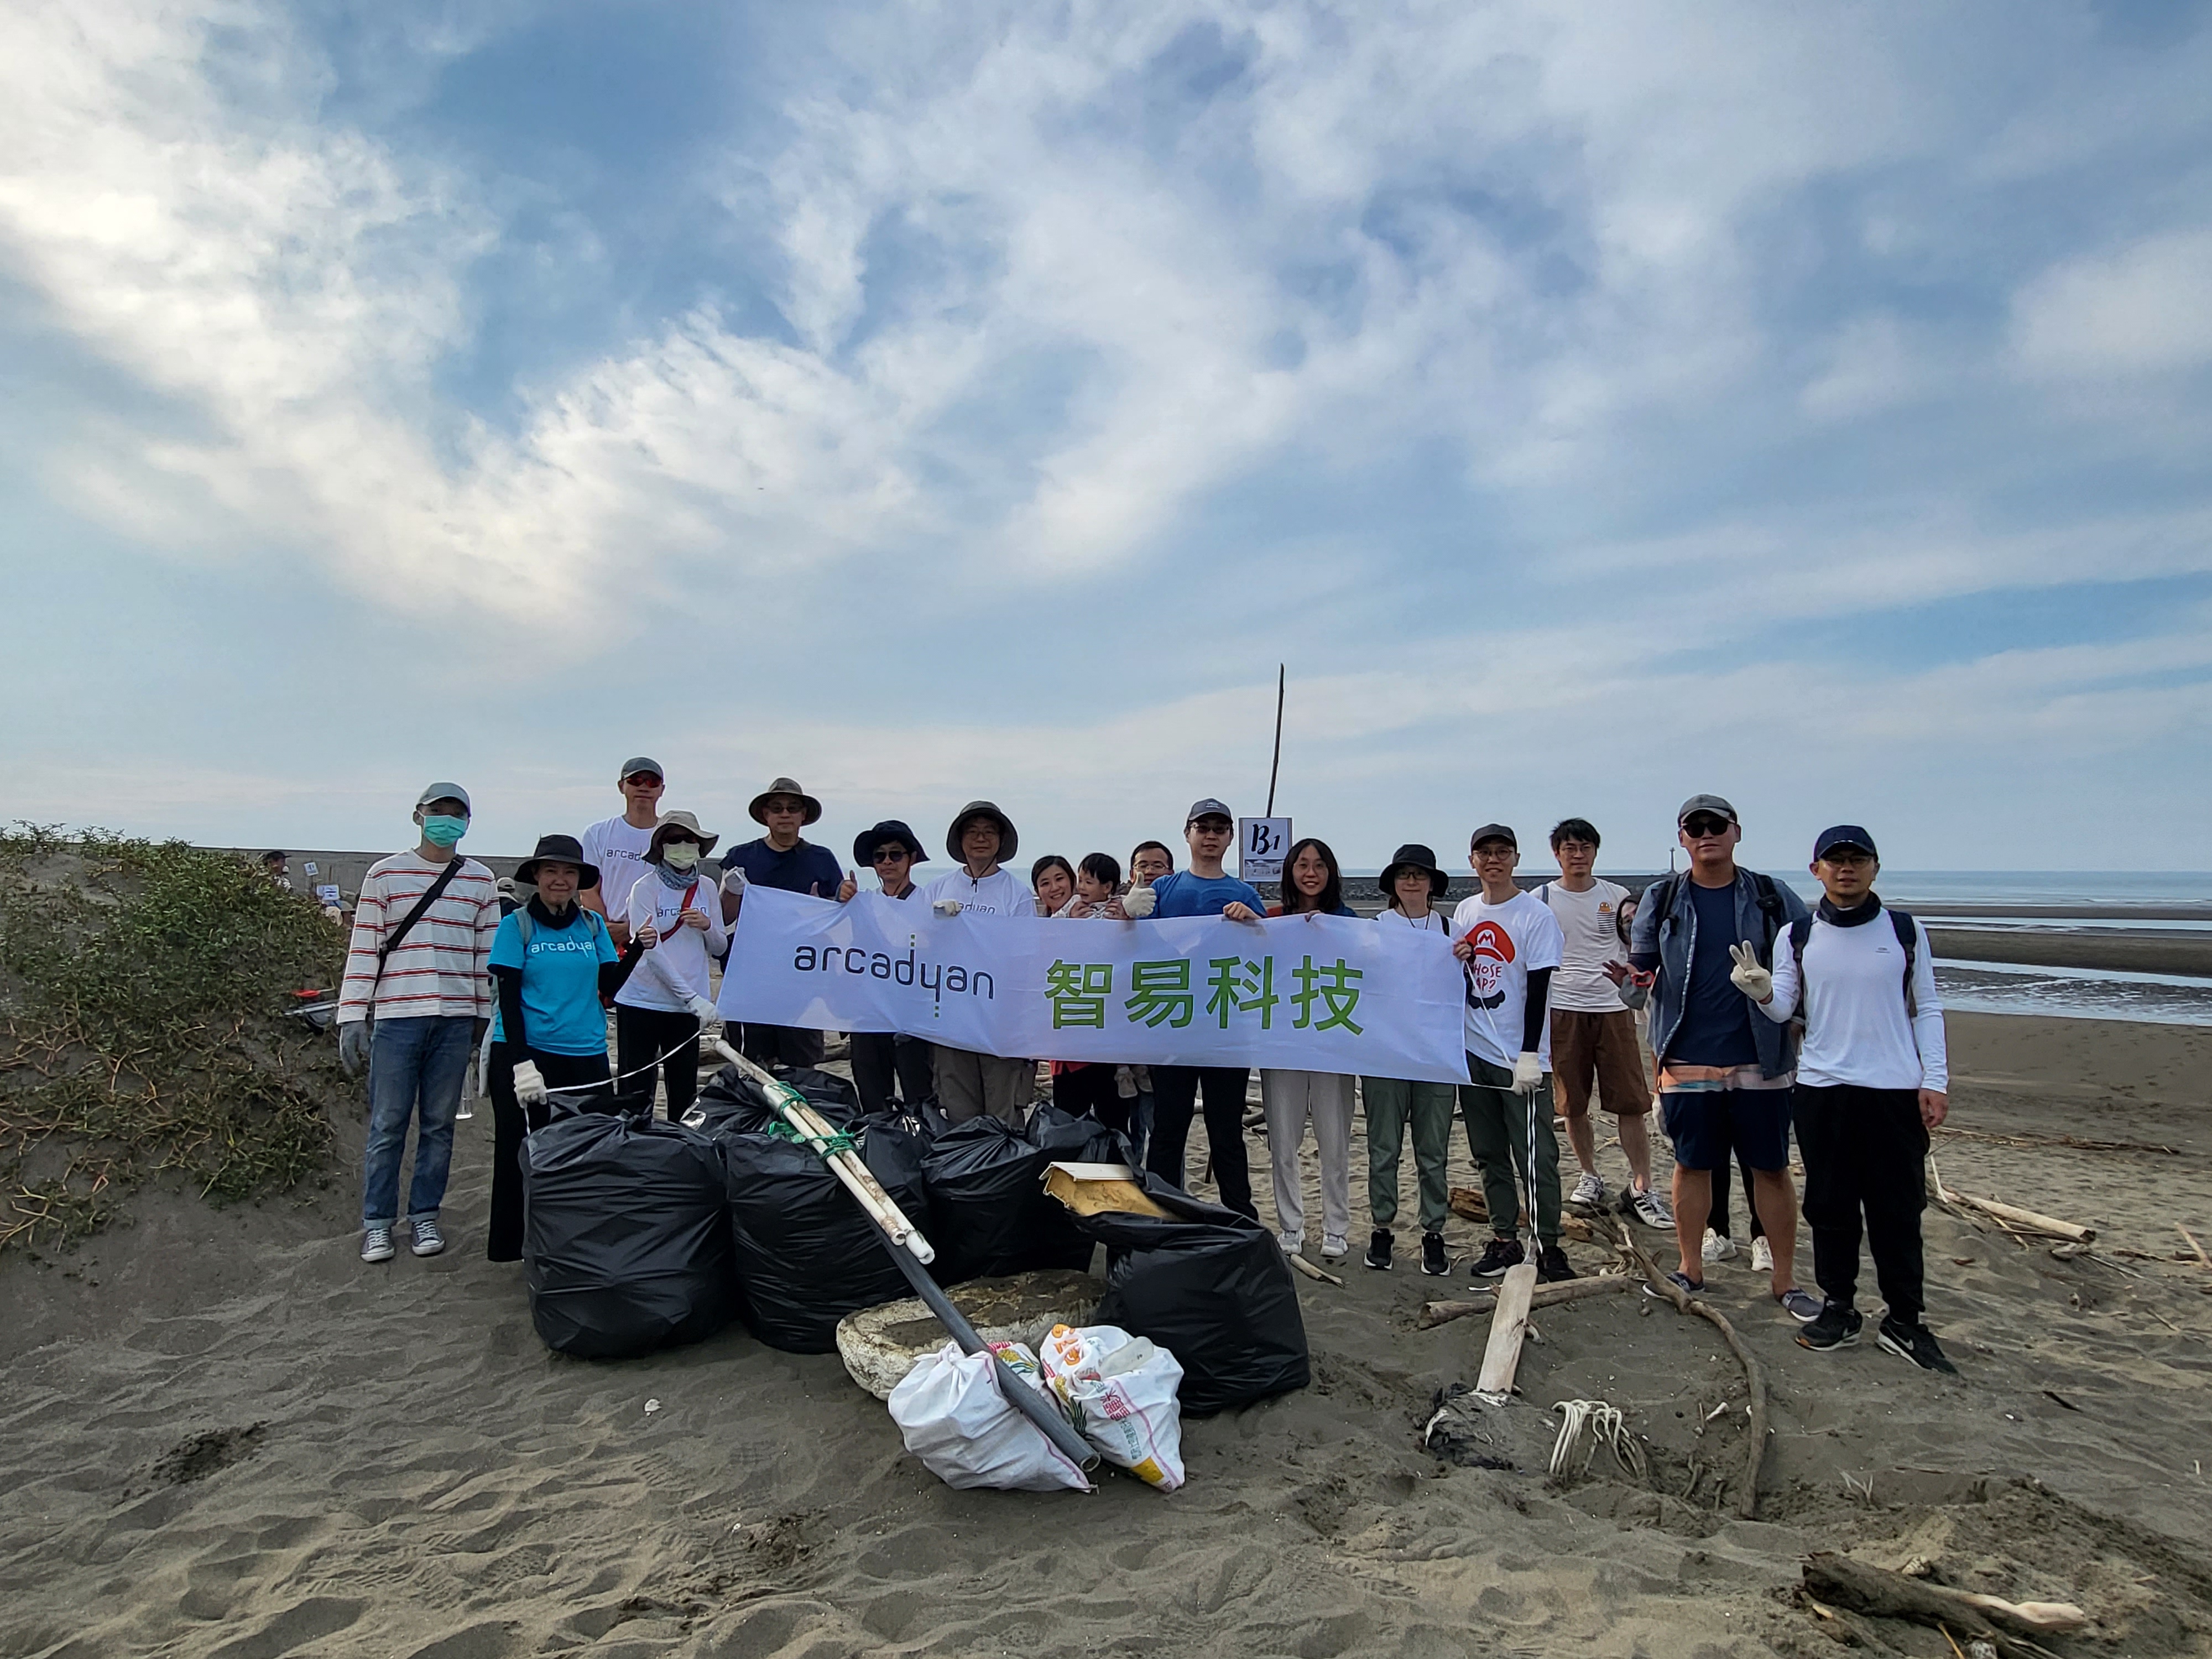 智易響應國際淨灘日 清理2,300kg海廢垃圾 4